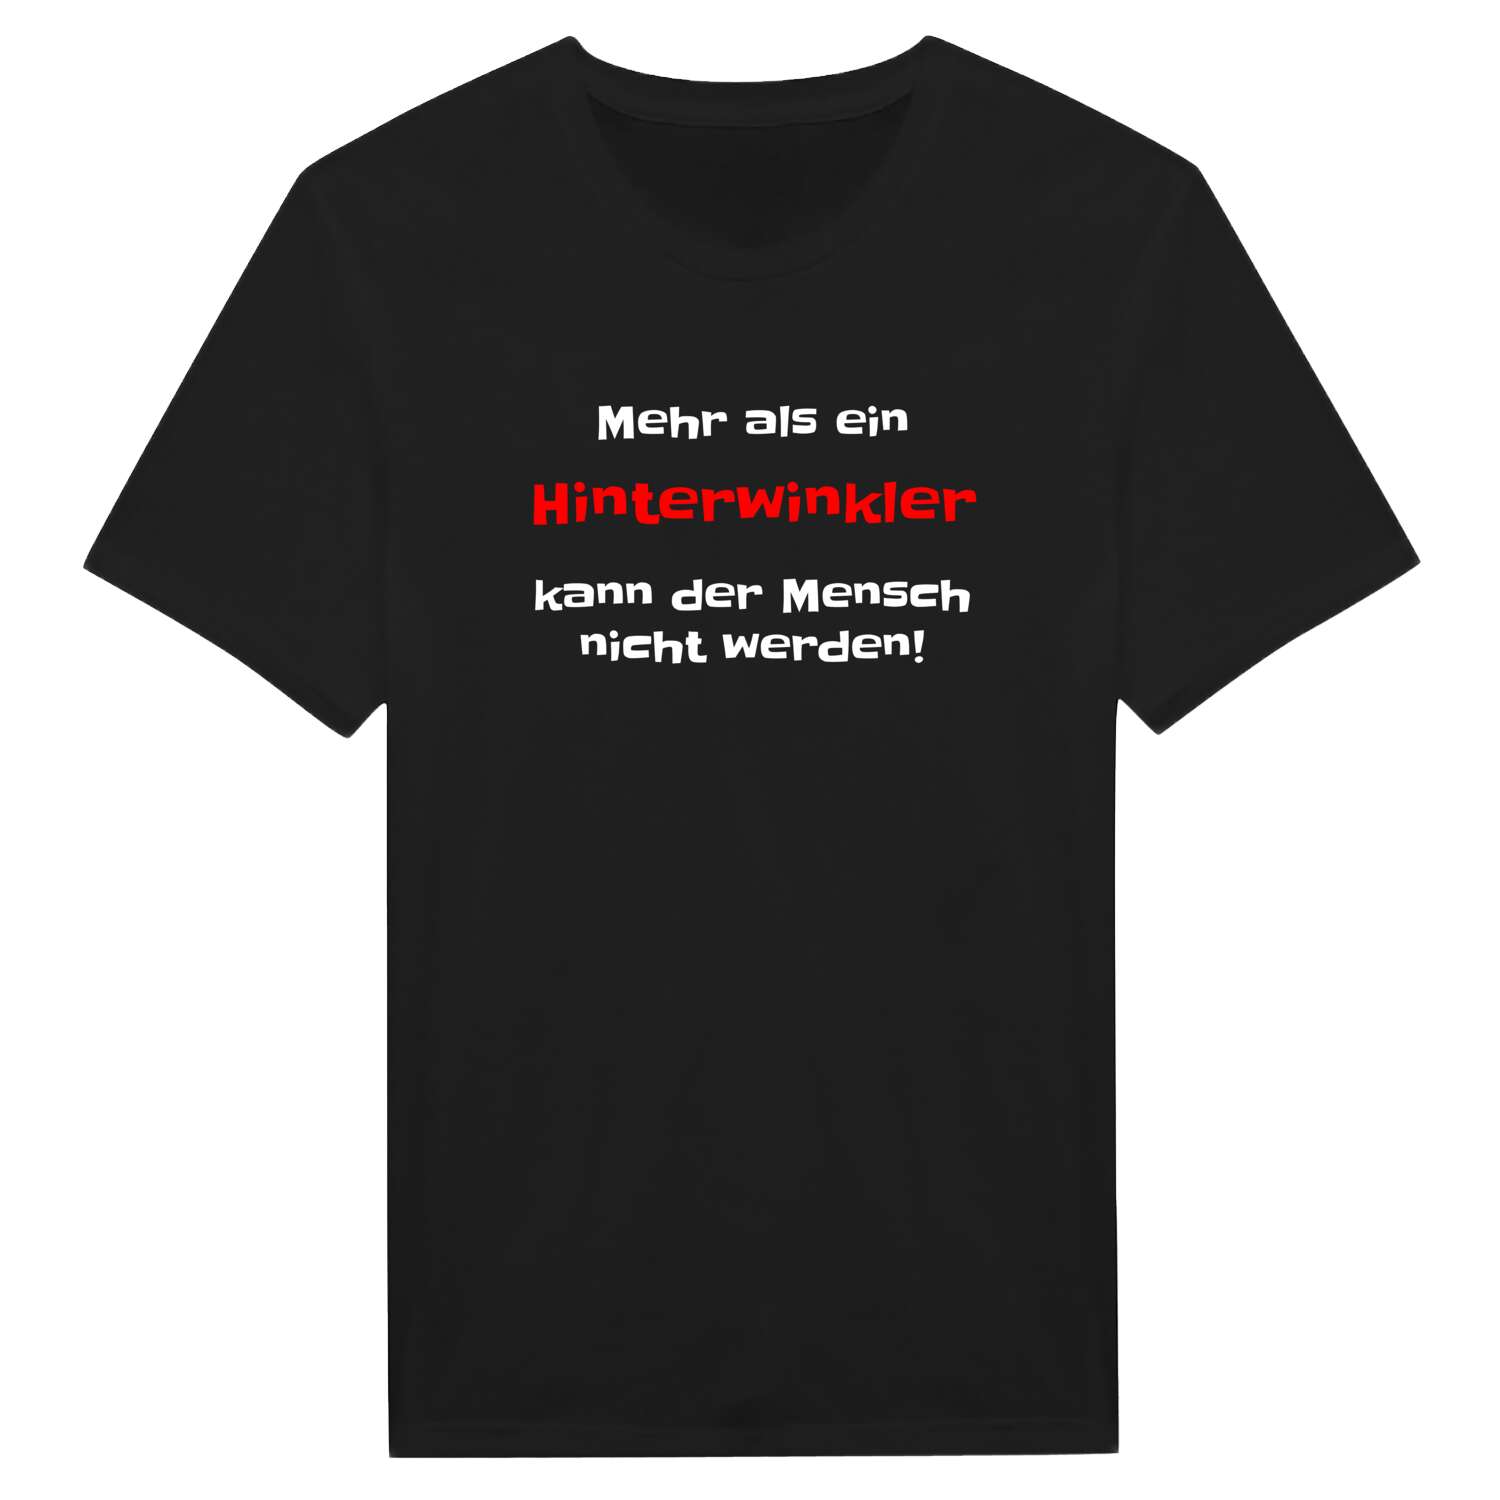 Hinterwinkl T-Shirt »Mehr als ein«